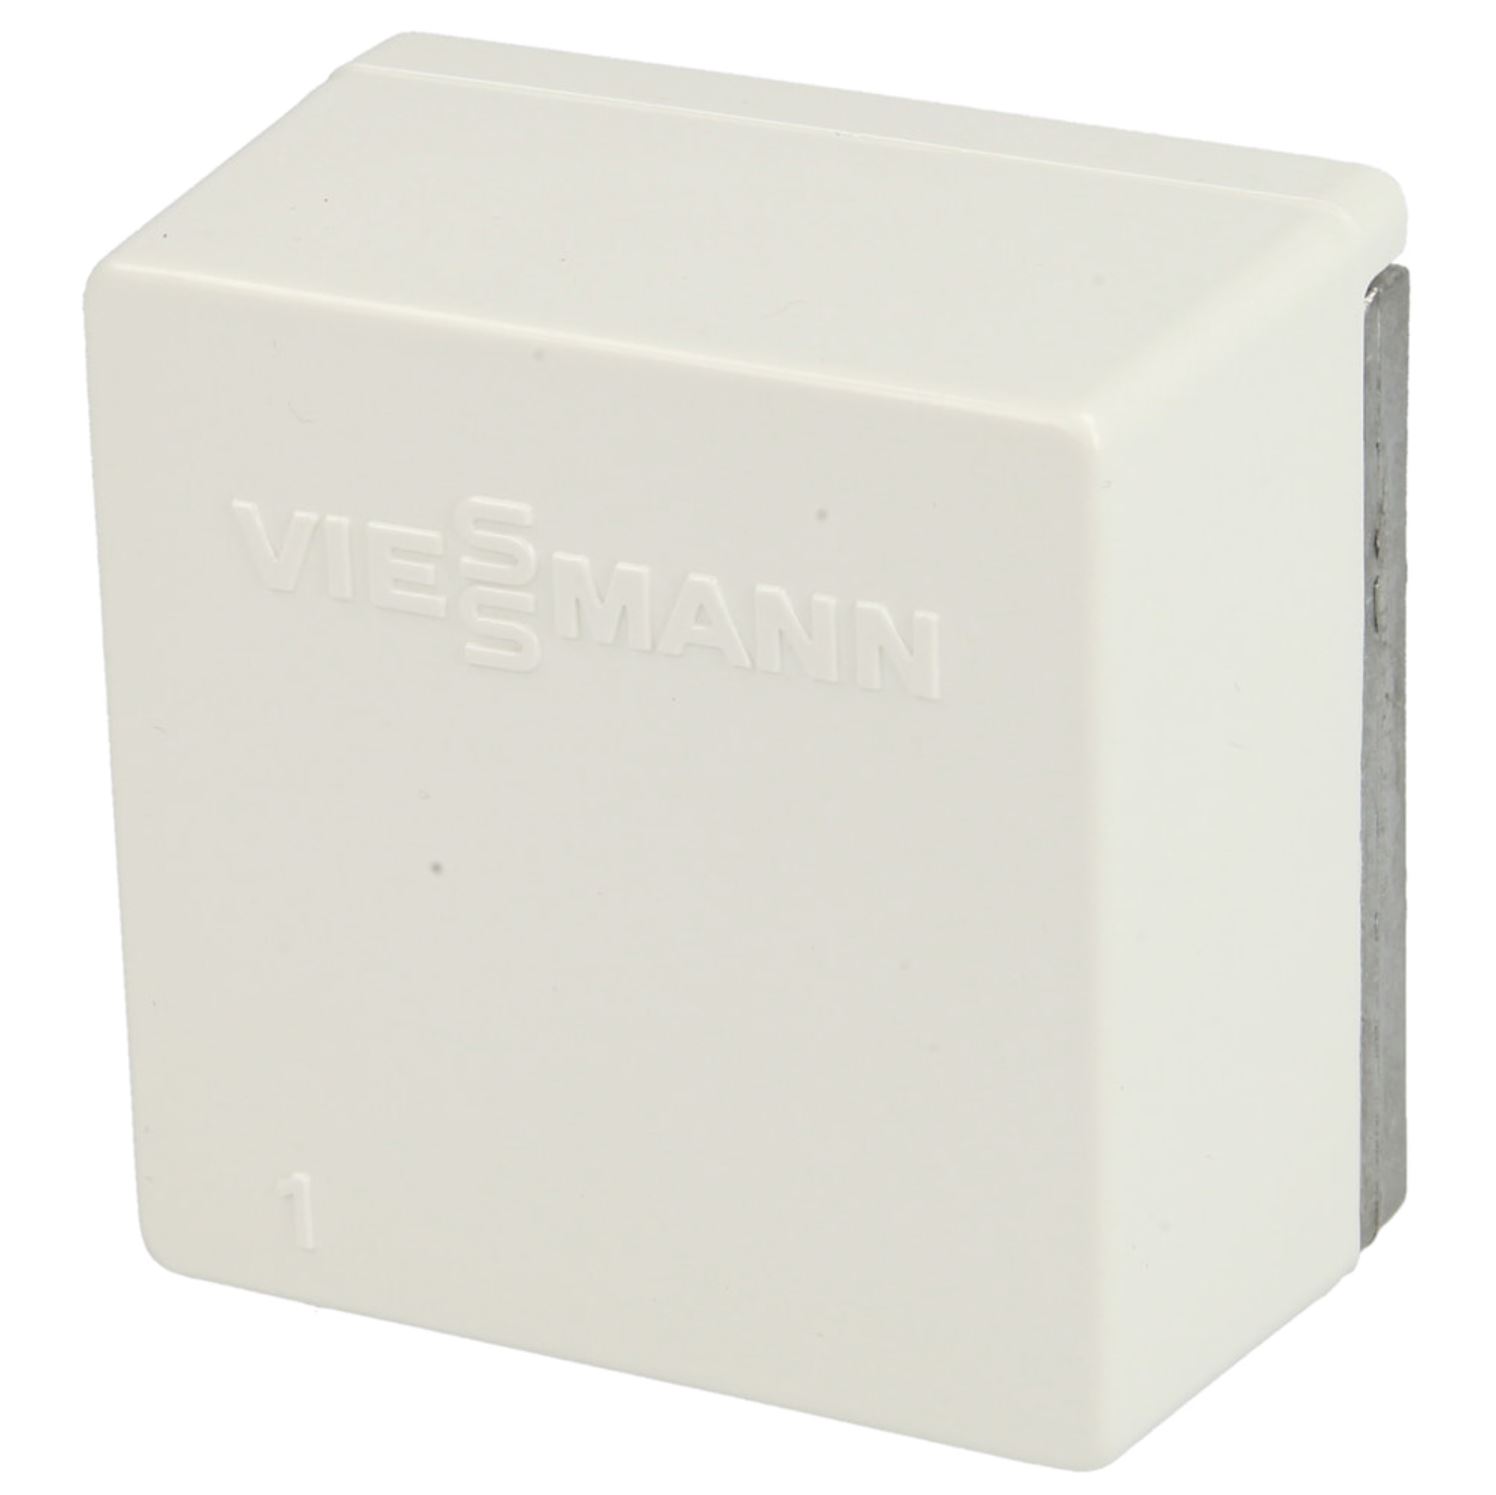 Außentemperatursensor NTC 10k Viessmann - 7814197